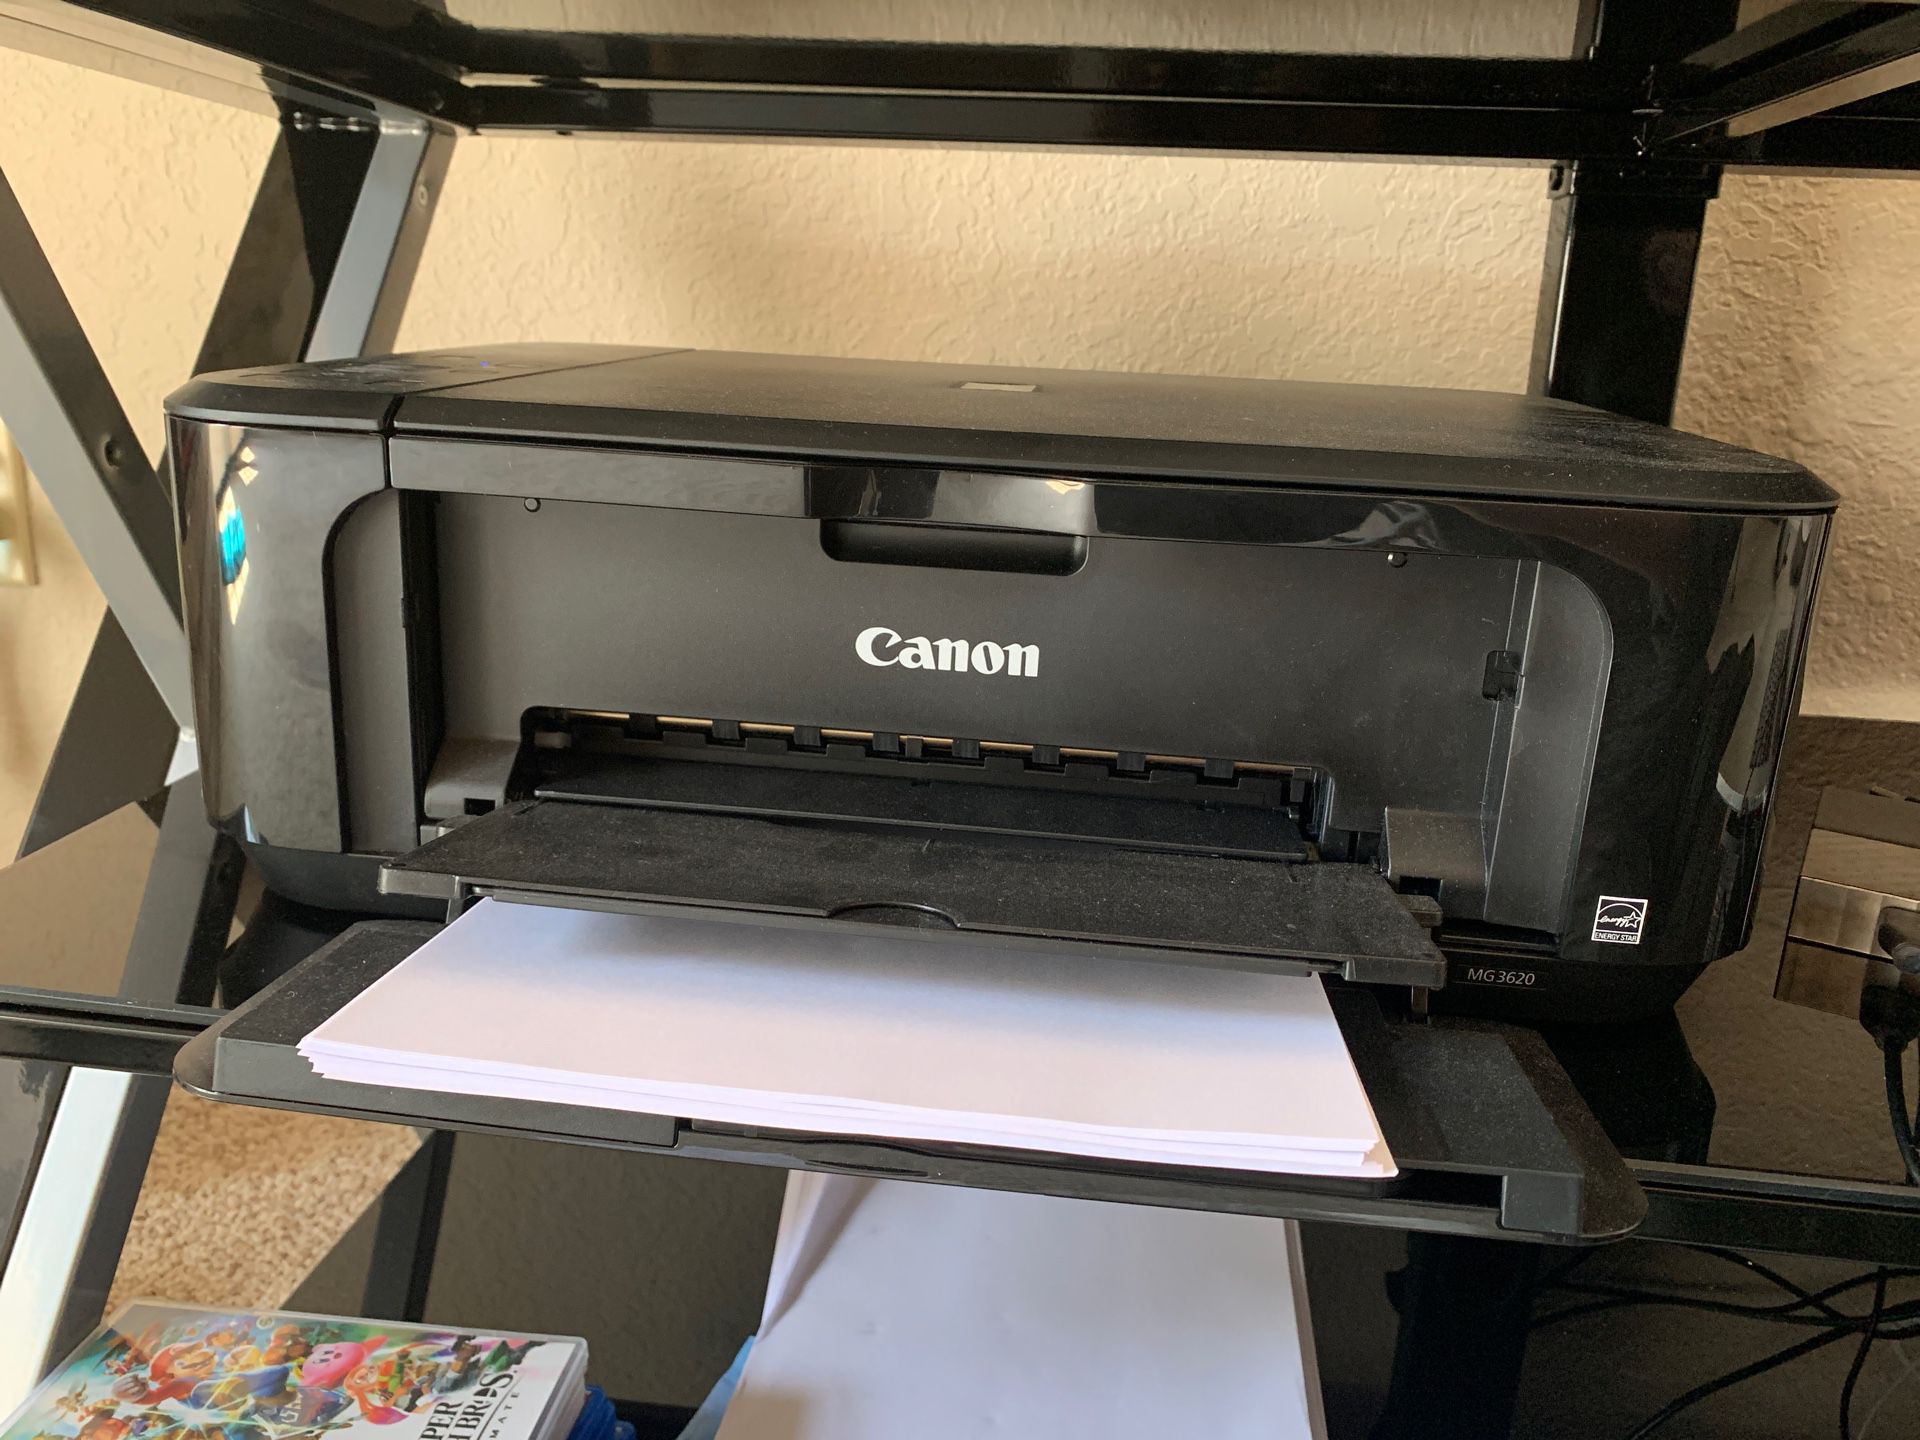 Printer - Canon MG3620